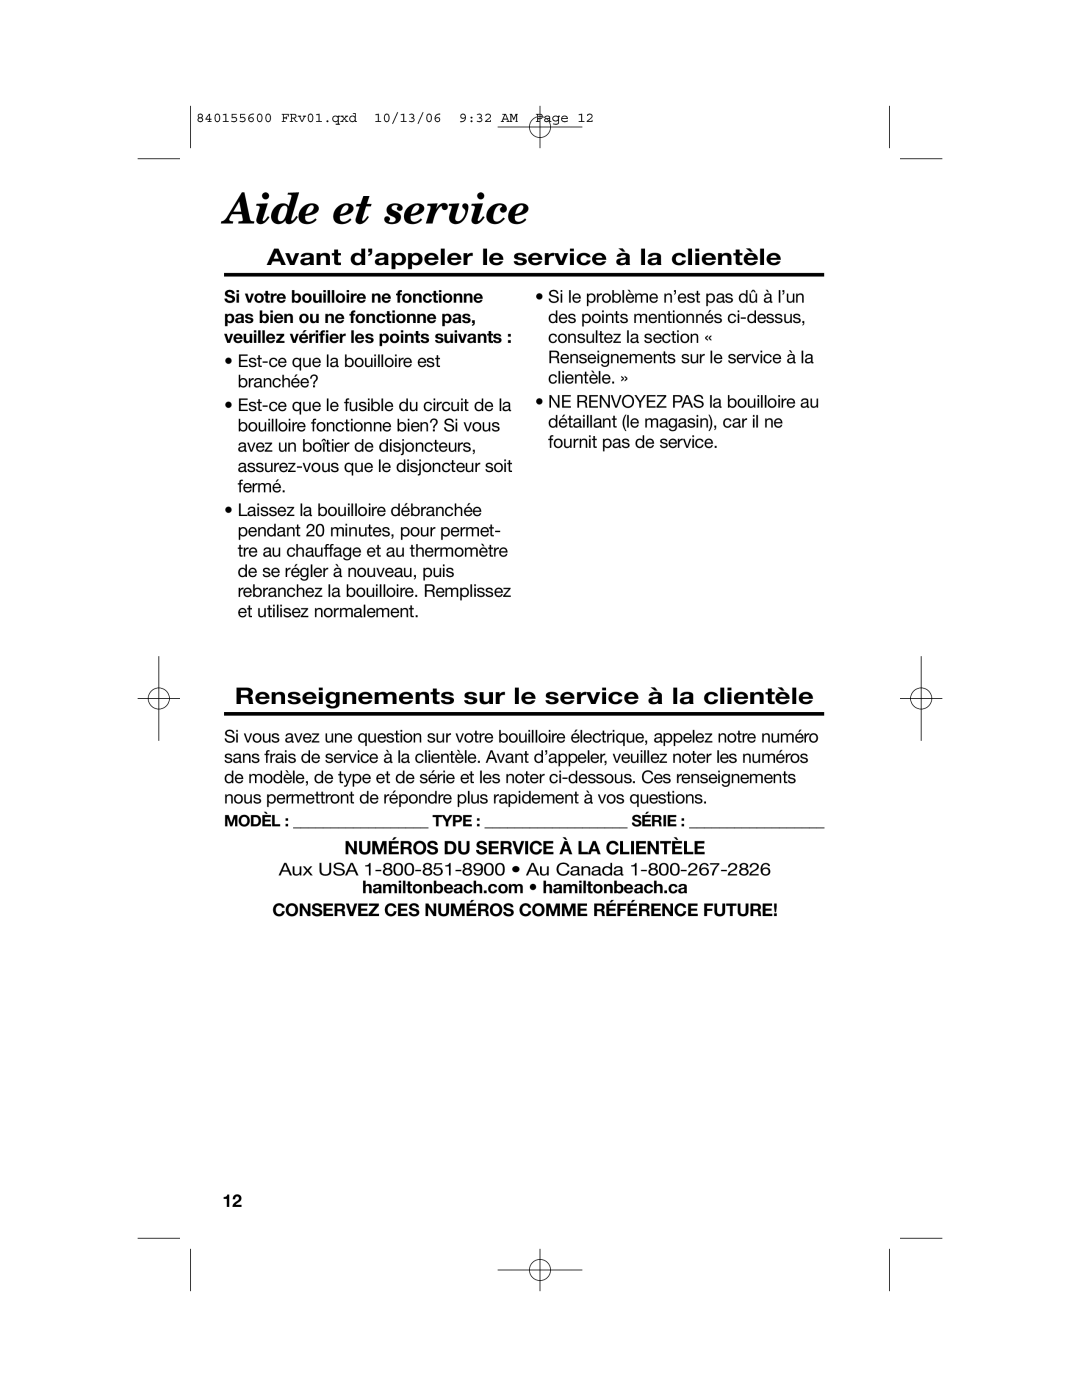 Hamilton Beach 40990 manual Aide et service, Avant d’appeler le service à la clientèle, Numéros Du Service À La Clientèle 